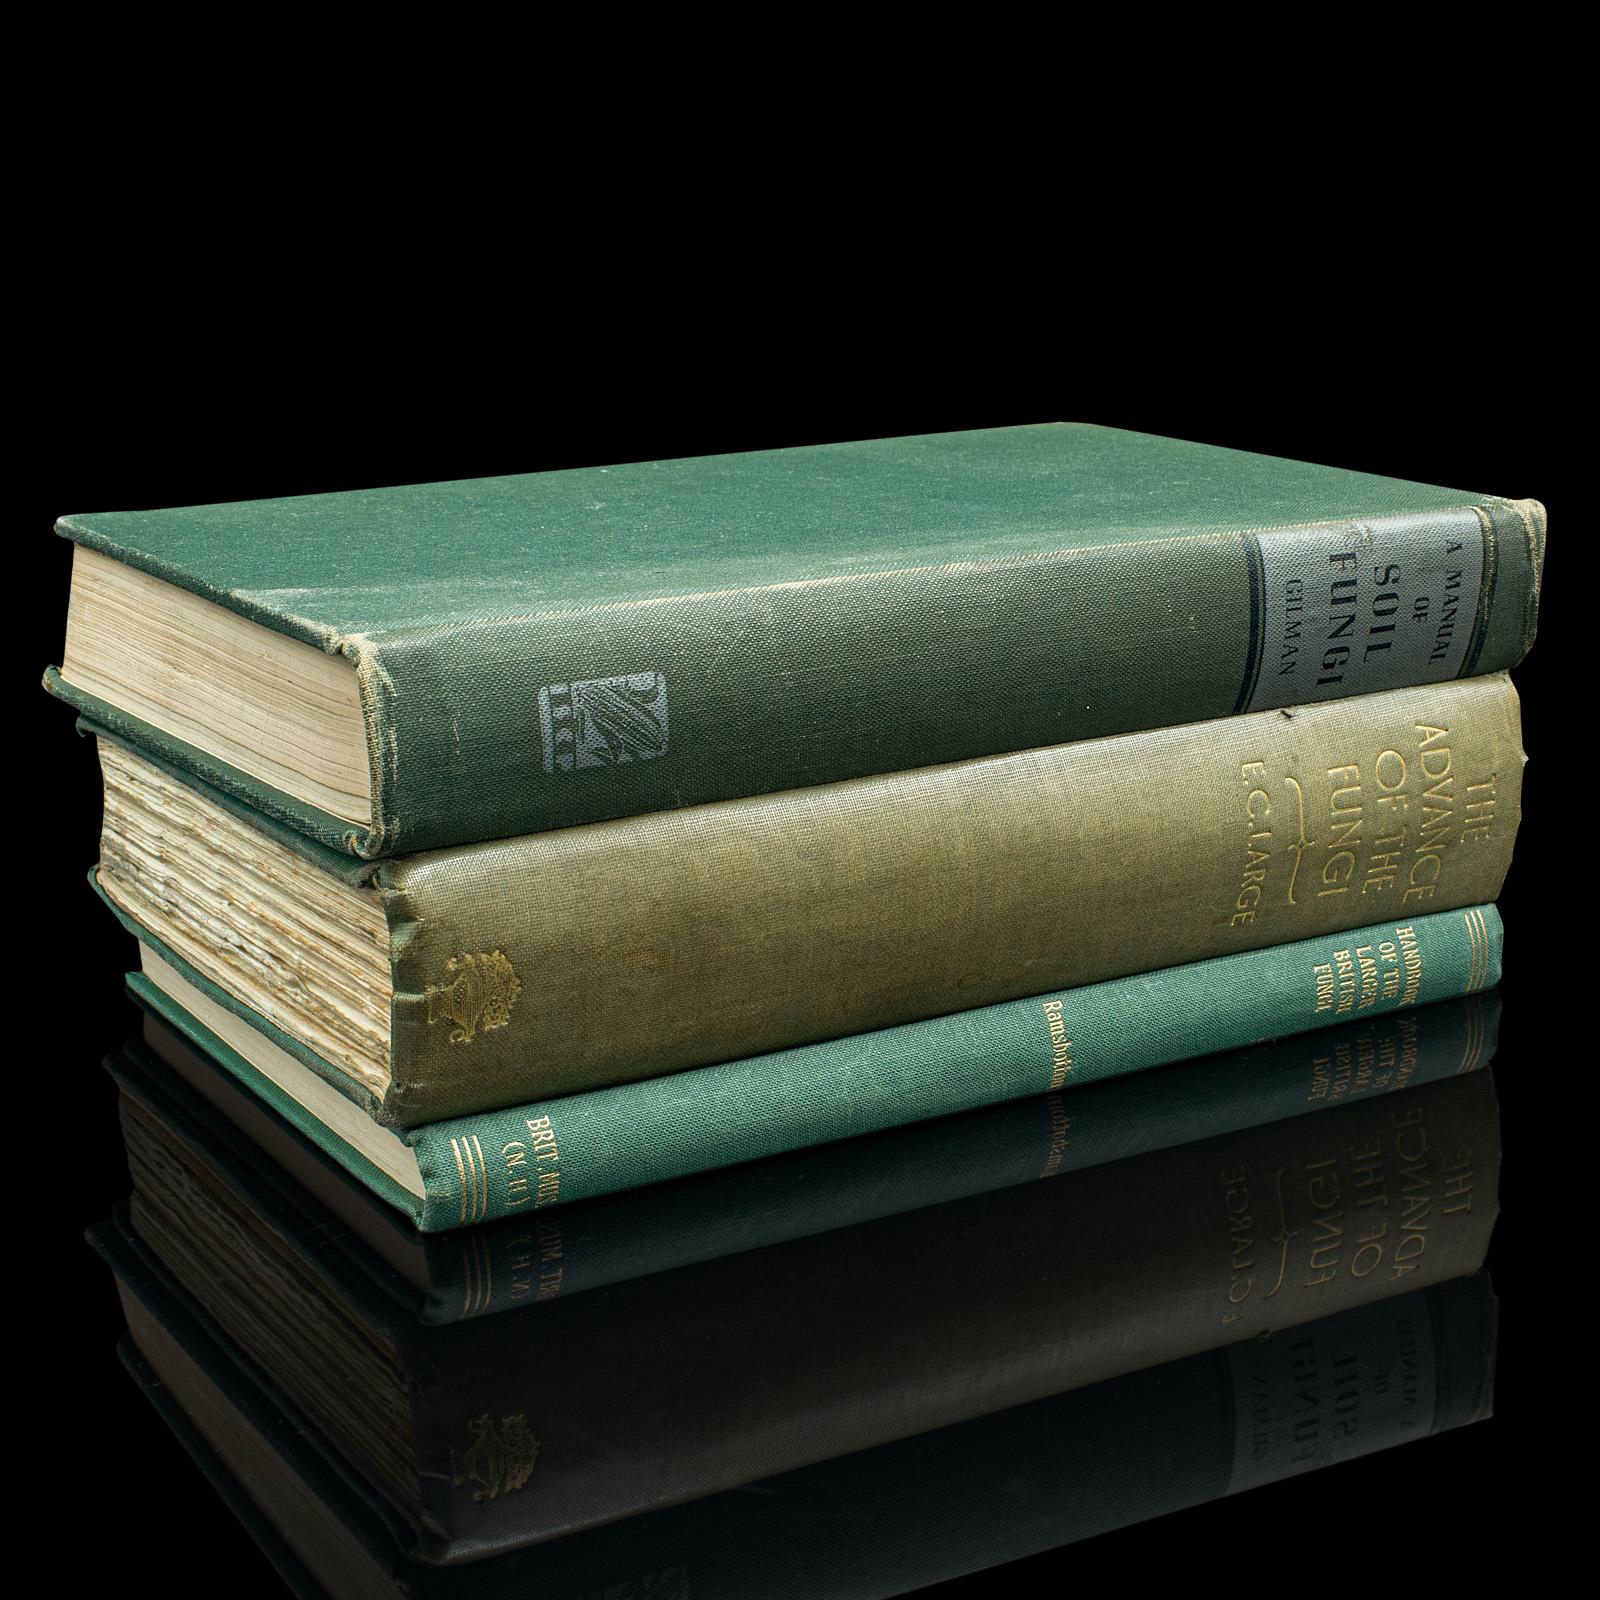 
Il s'agit d'un ensemble de 3 livres de référence sur les champignons. En anglais, titres de biologie scientifique reliés, publiés au milieu du 20e siècle.

Comprend les trois titres suivants : A Manual of Soil Fungi (1945) Iowa, USA - 392 pages ;